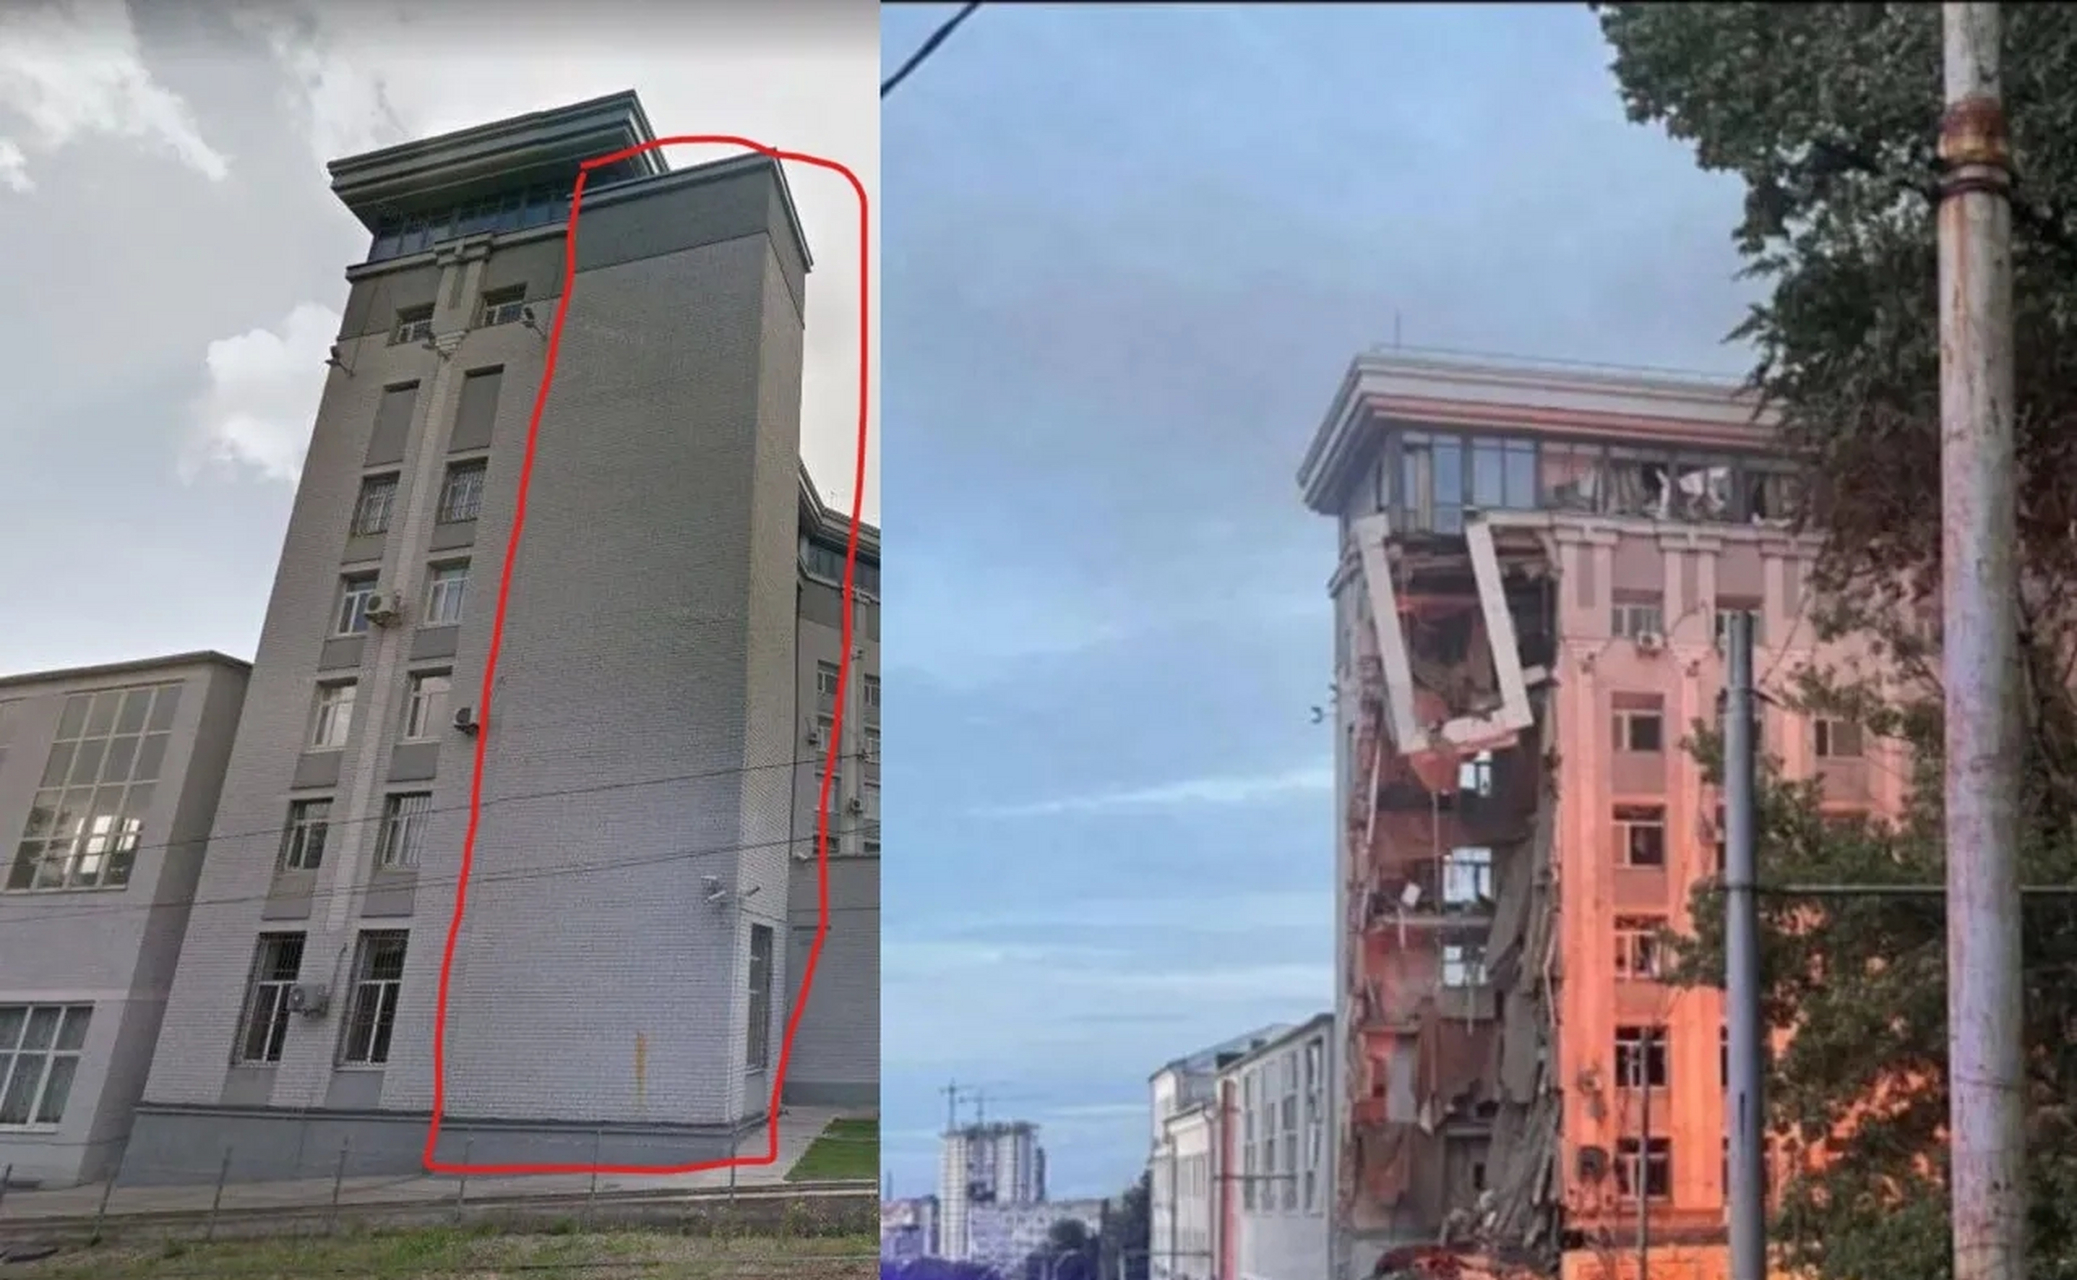 乌克兰政府大楼位置图片